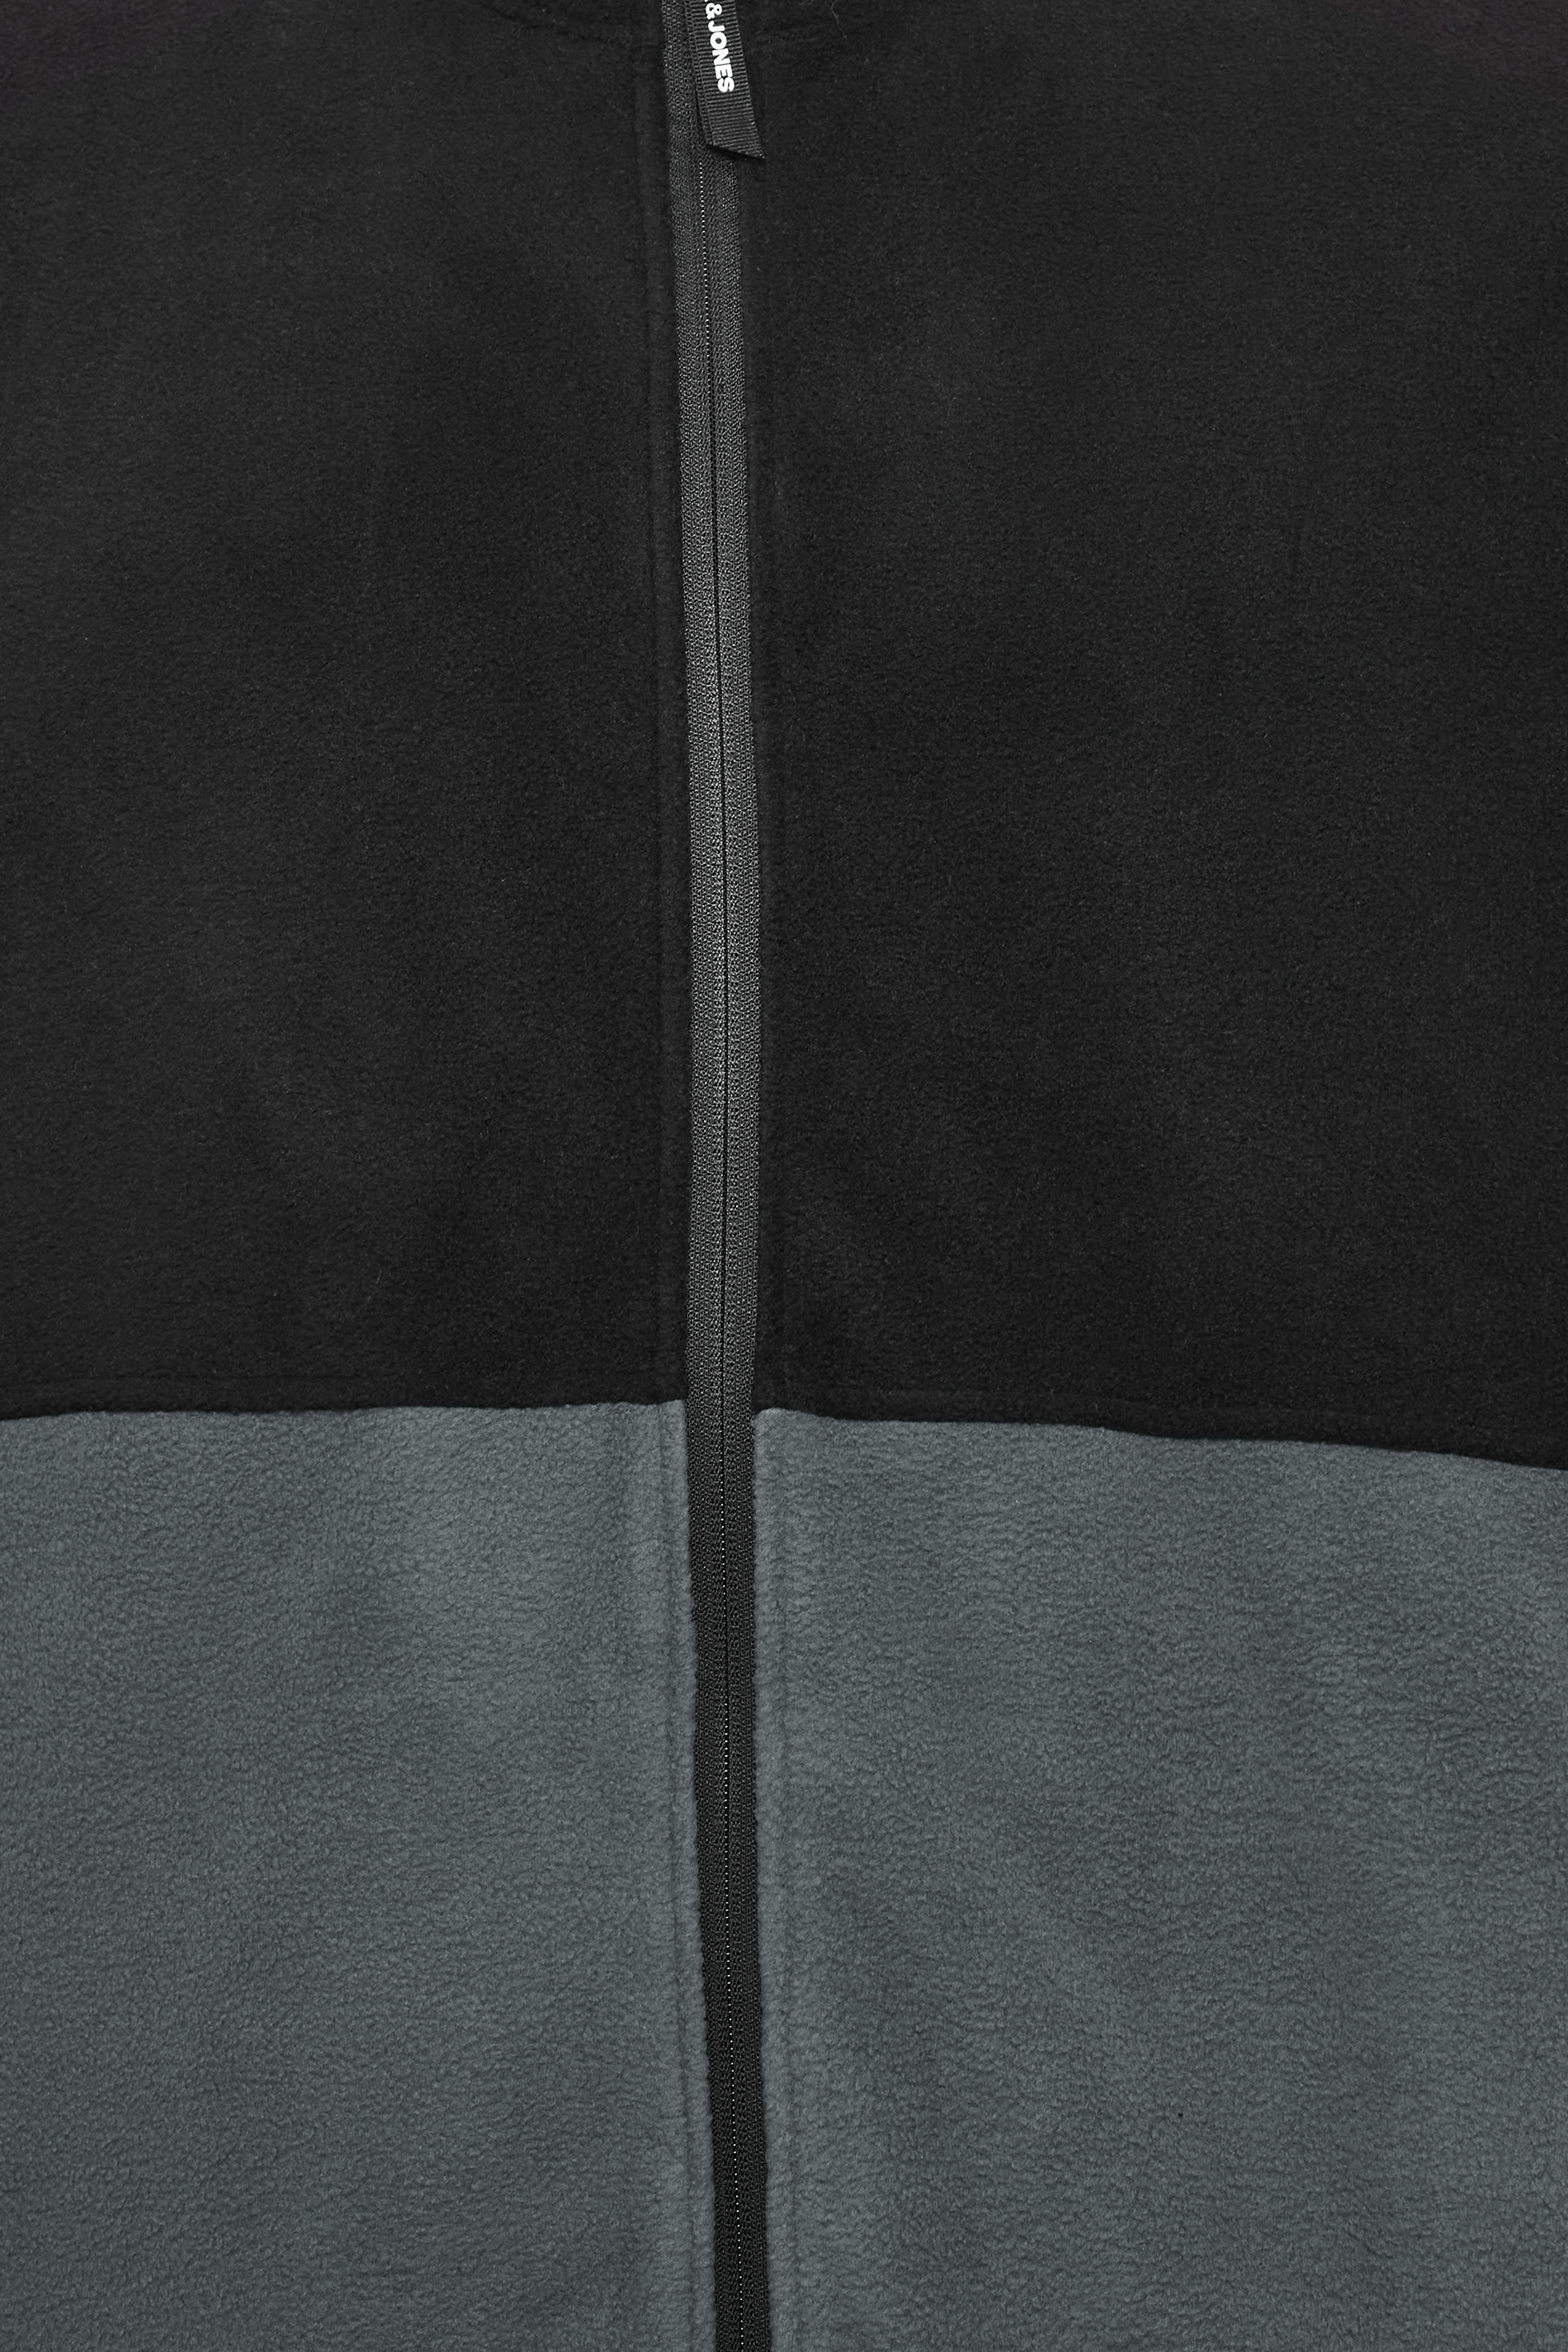 JACK & JONES Big & Tall Blue Panel Zip Fleece Jacket | BadRhino 2